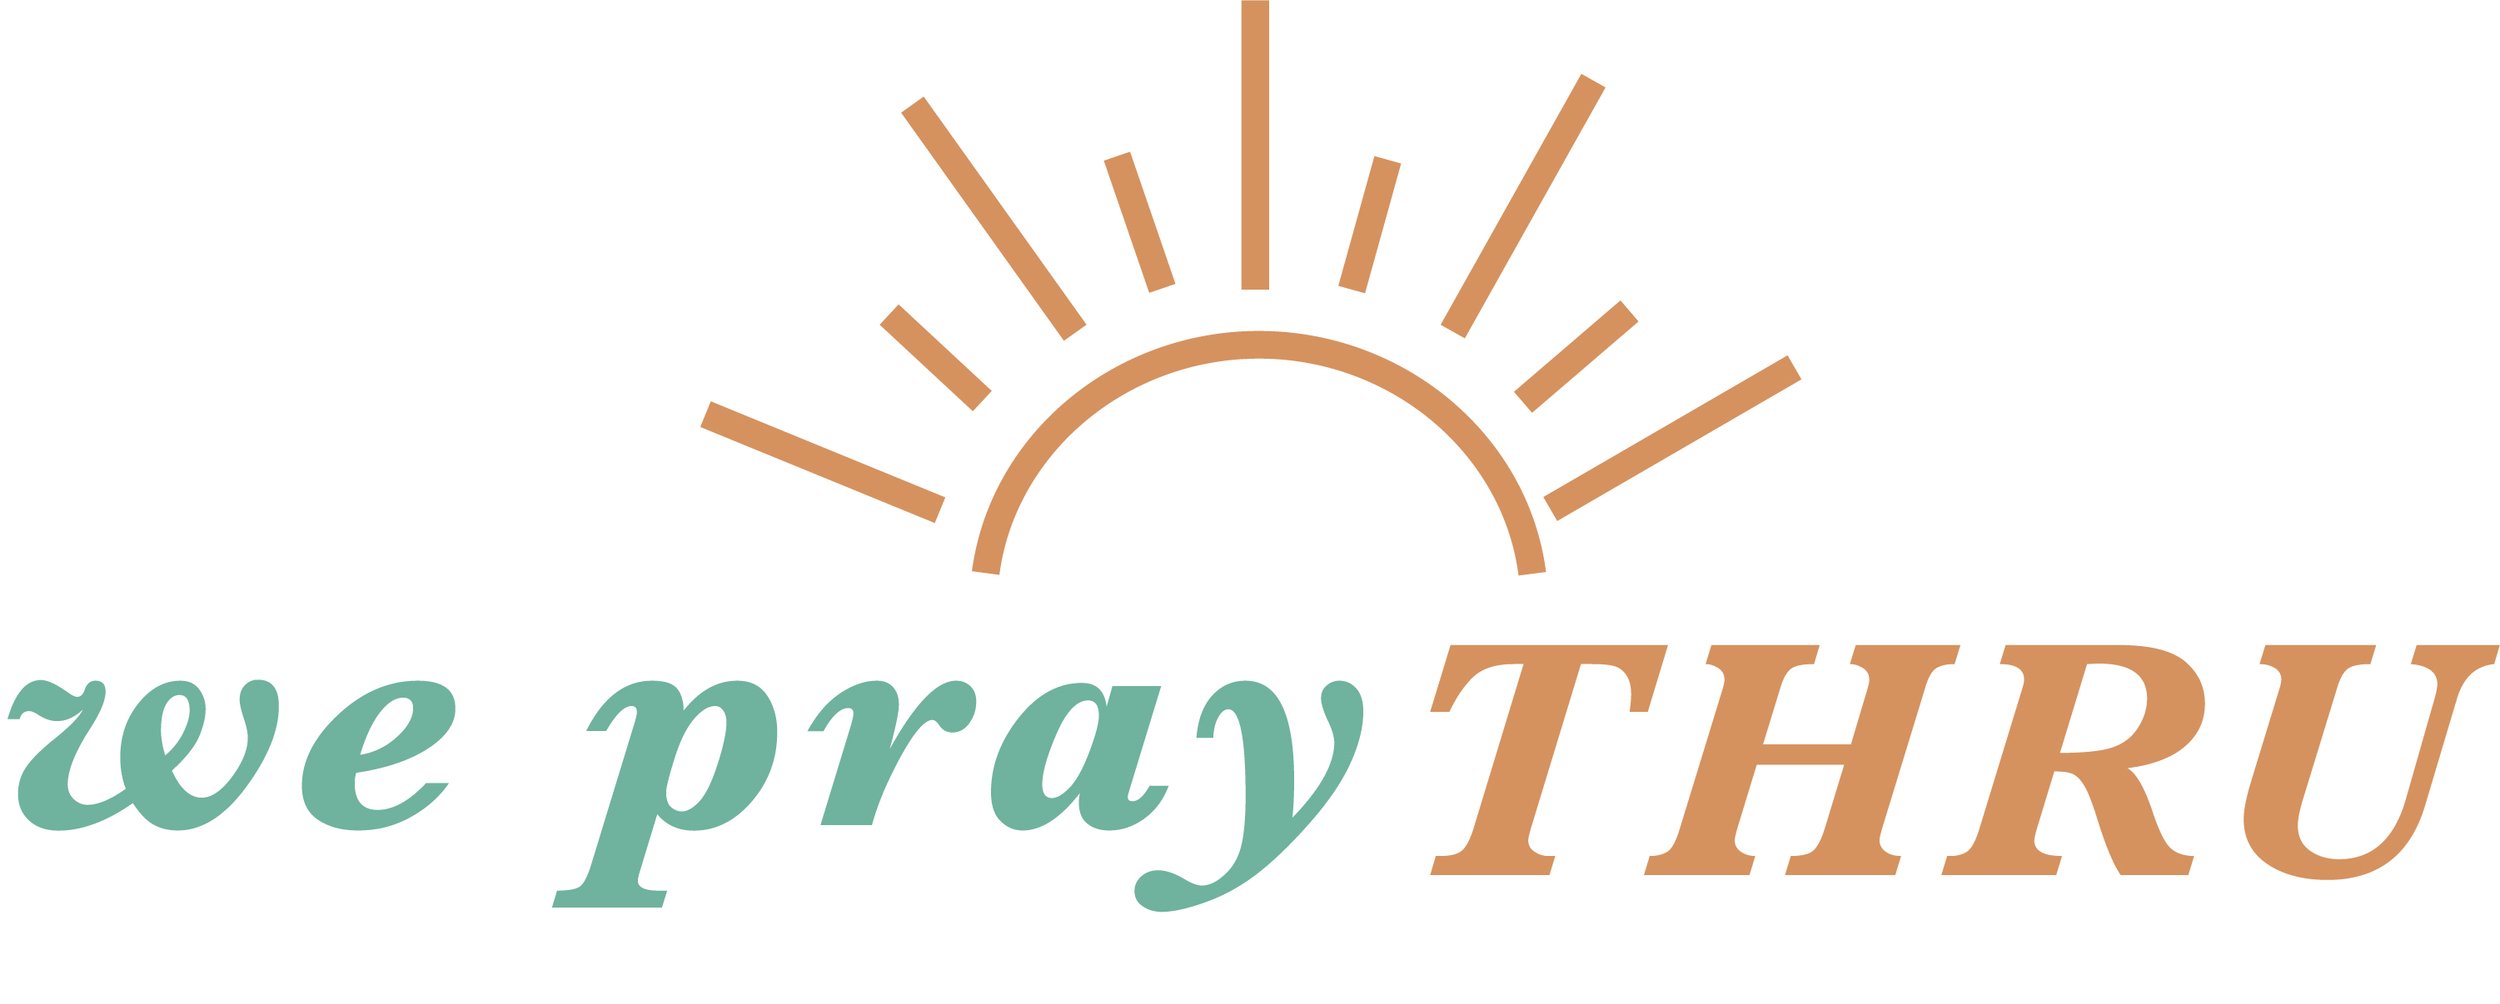 We Pray Through | Tracy Arntzen